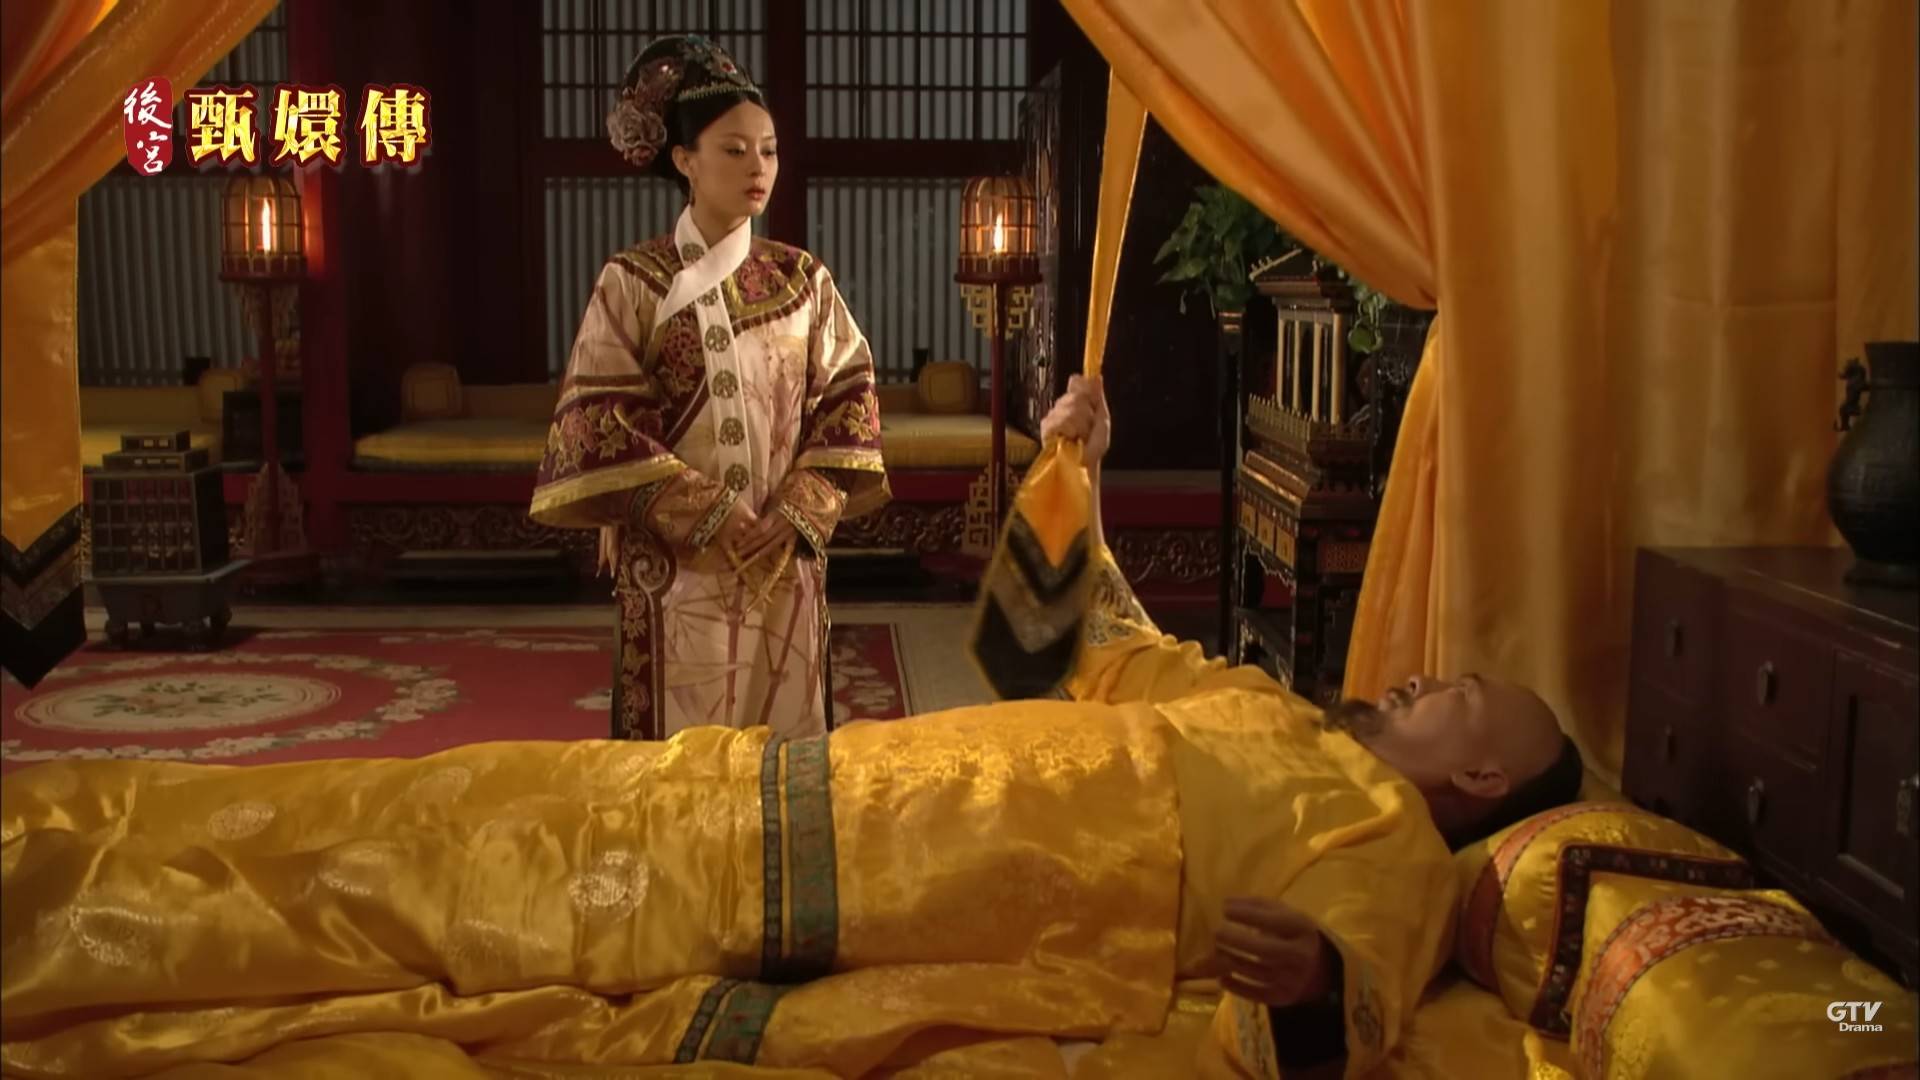 在經典劇情「皇上駕崩」中，皇帝拉扯的「黃帶子」引發討論